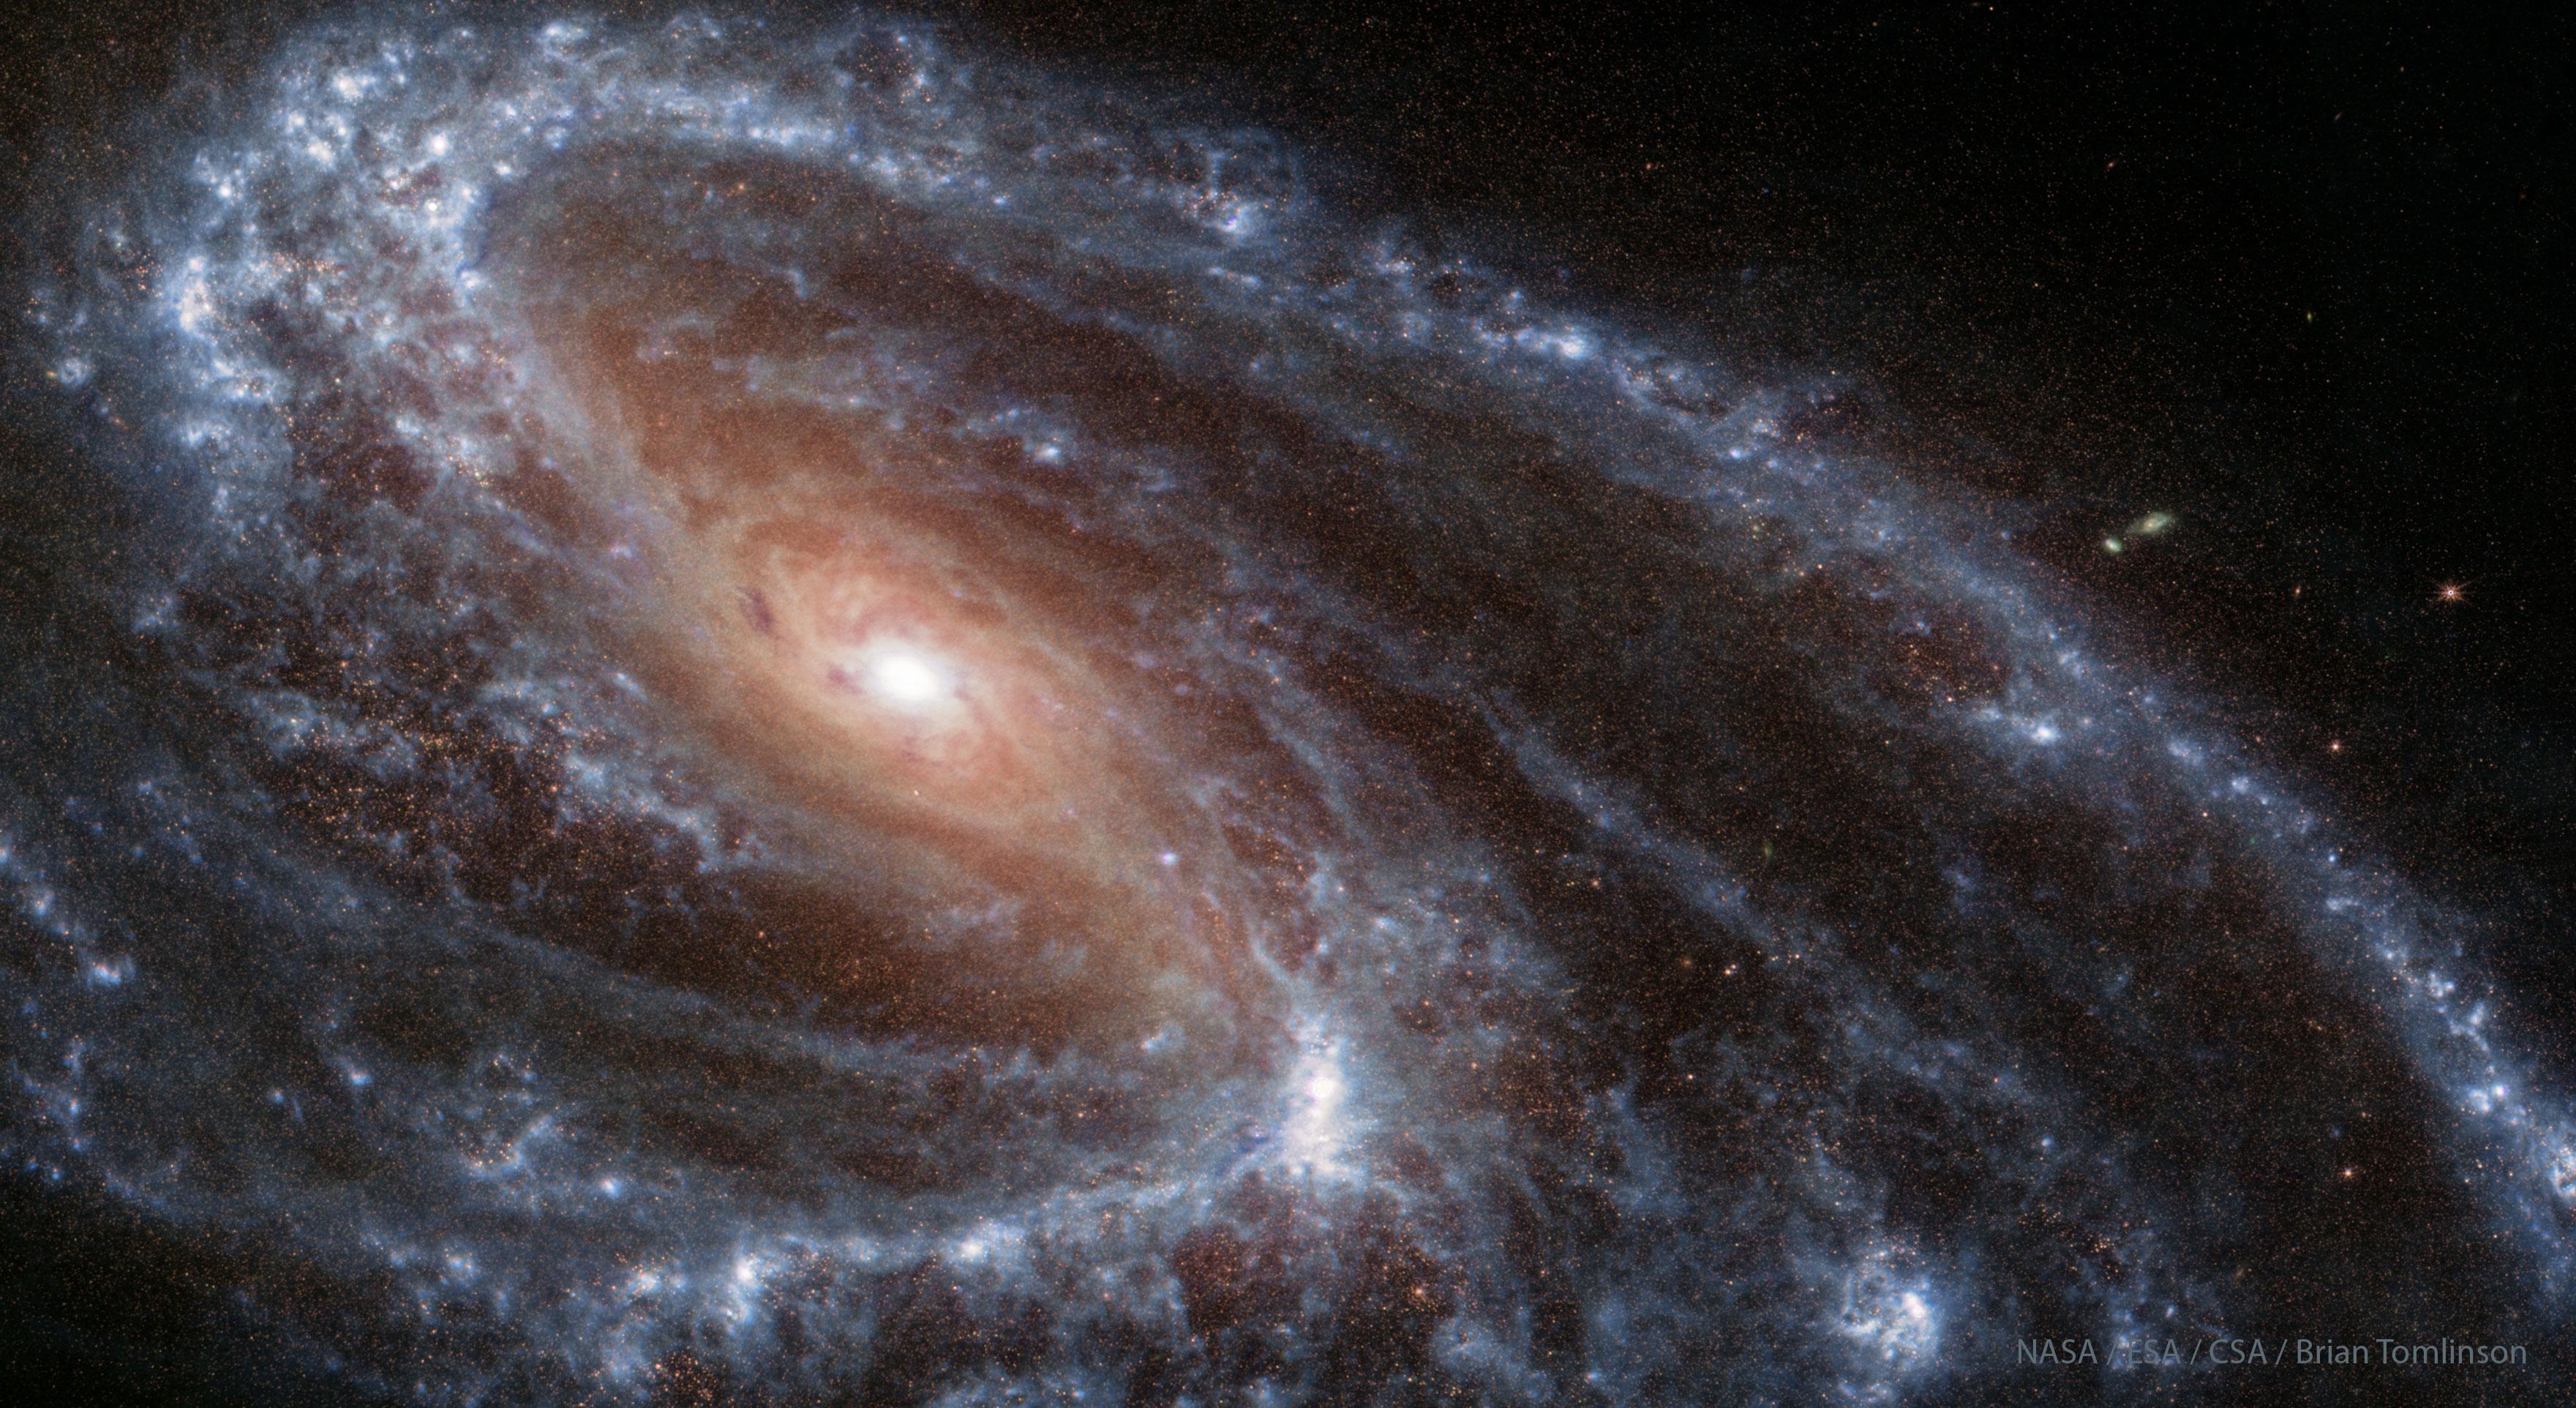 تظهر المجرّة الحلزونيّة م66 في الضوء تحت الأحمر كما تُرى بواسطة تلسكوب جيمس وِبّ الفضائي المداري. يُرى في المجرّة مركزٌ بنيٌّ مُحمرّ مع أذرعٍ حلزونيّة زرقاء اللون تحيط به. ستكشف نظرةٌ عن كثب أنّ هذه الأذرع الحلزونيّة ليست متناظرة.